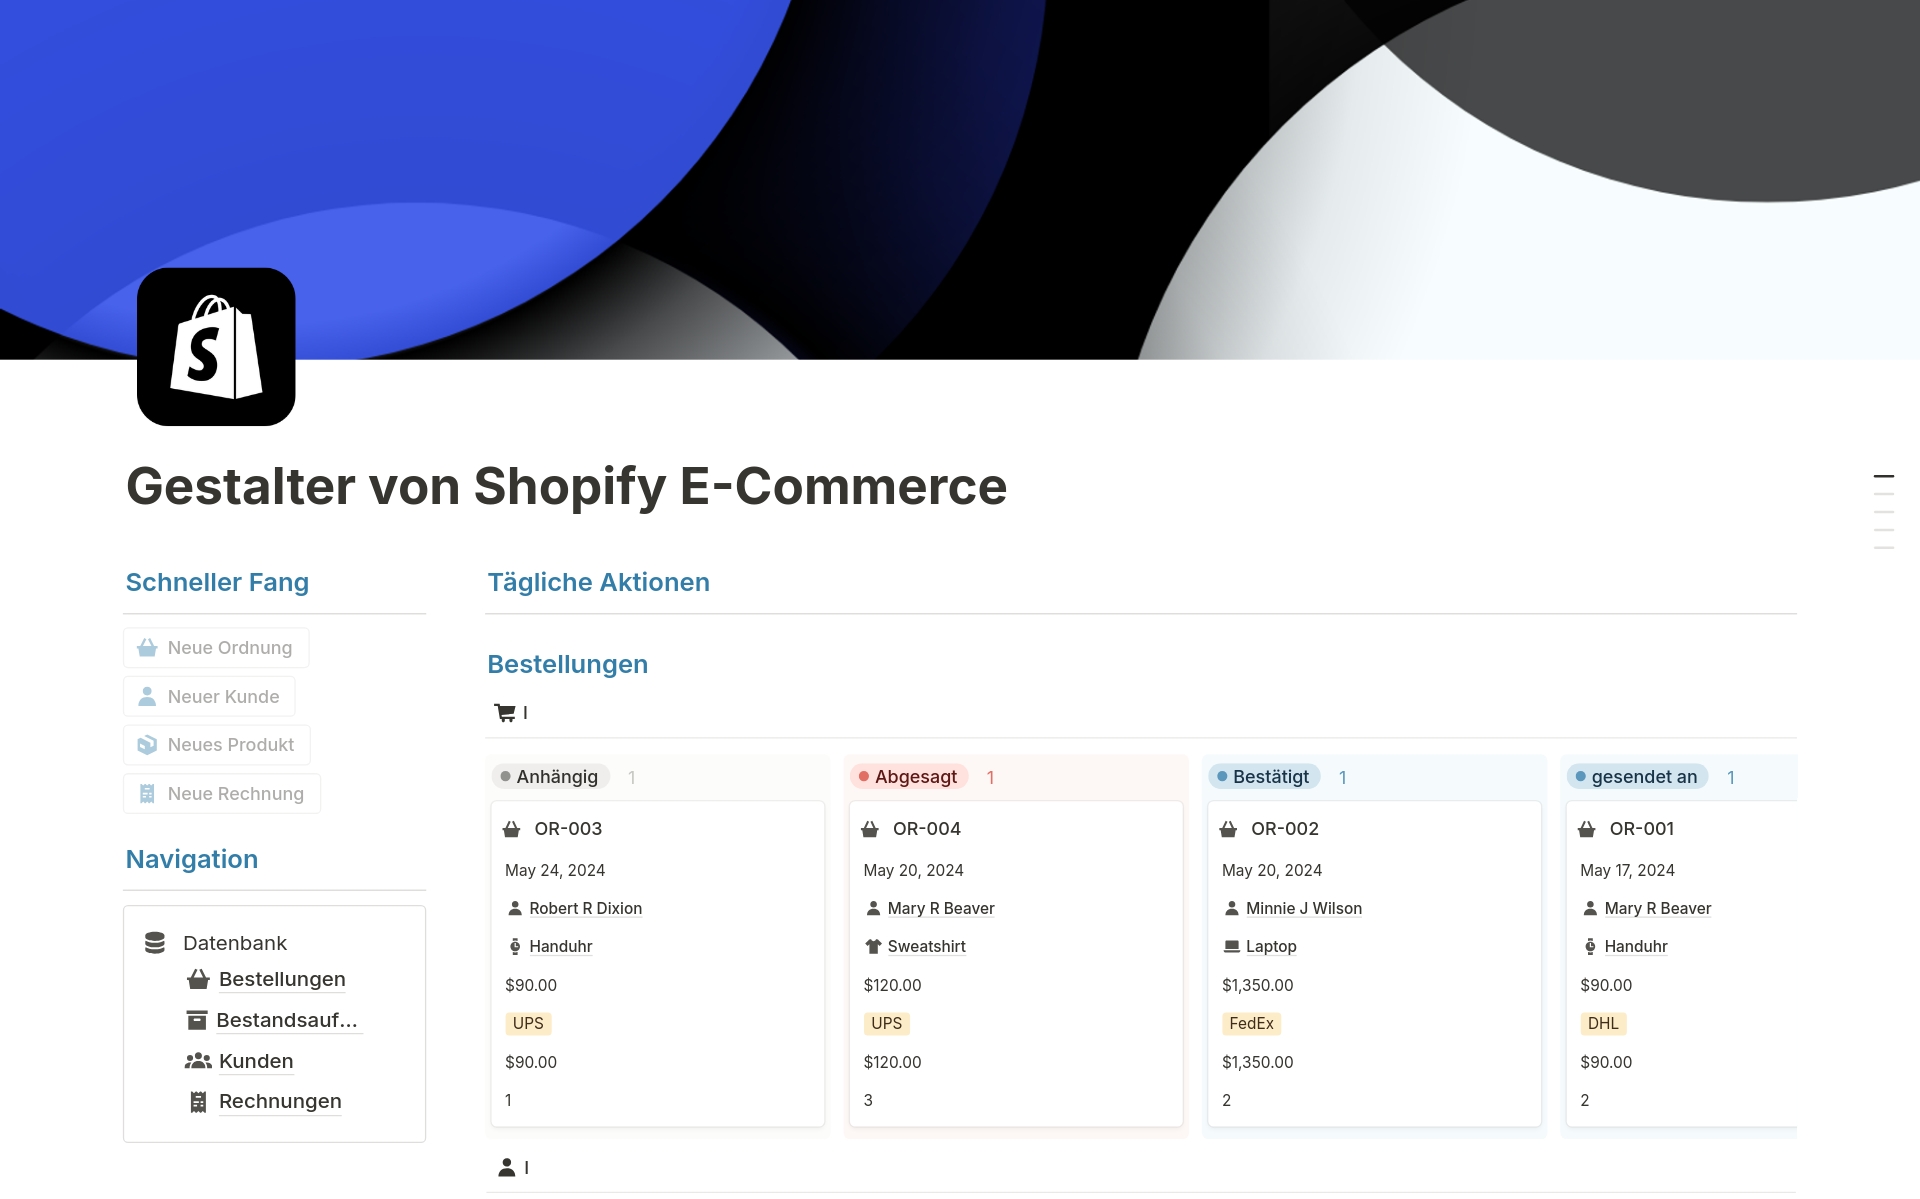 Vista previa de plantilla para Gestalter von Shopify E-Commerce